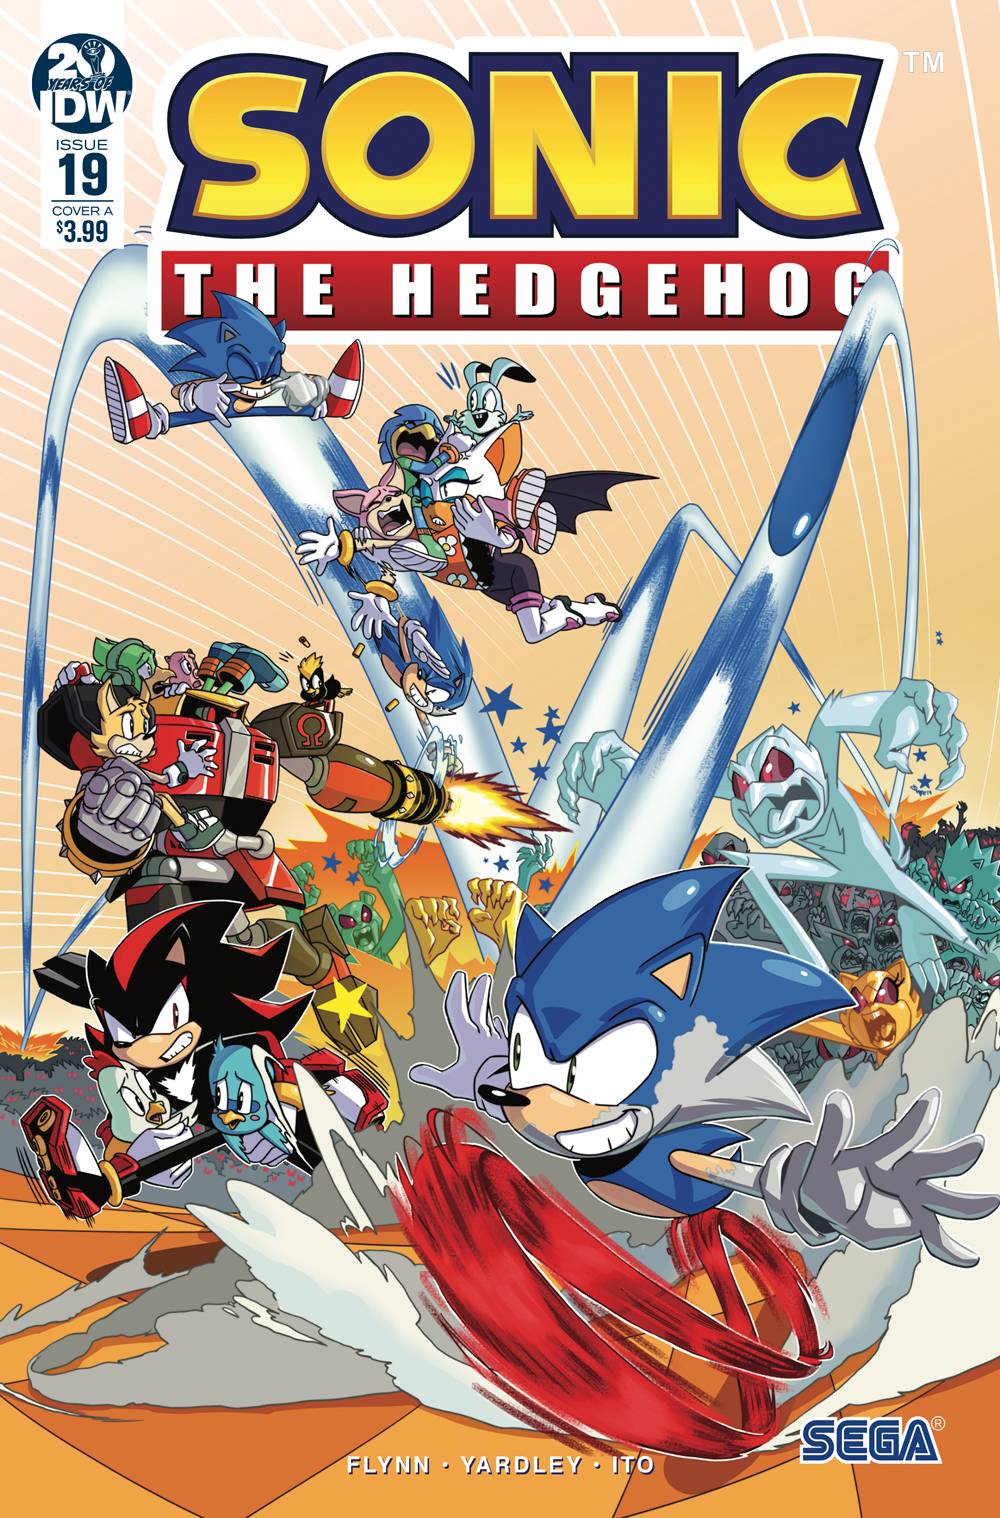 Metal Sonic (Sonic the Hedgehog) - IDW Publishing